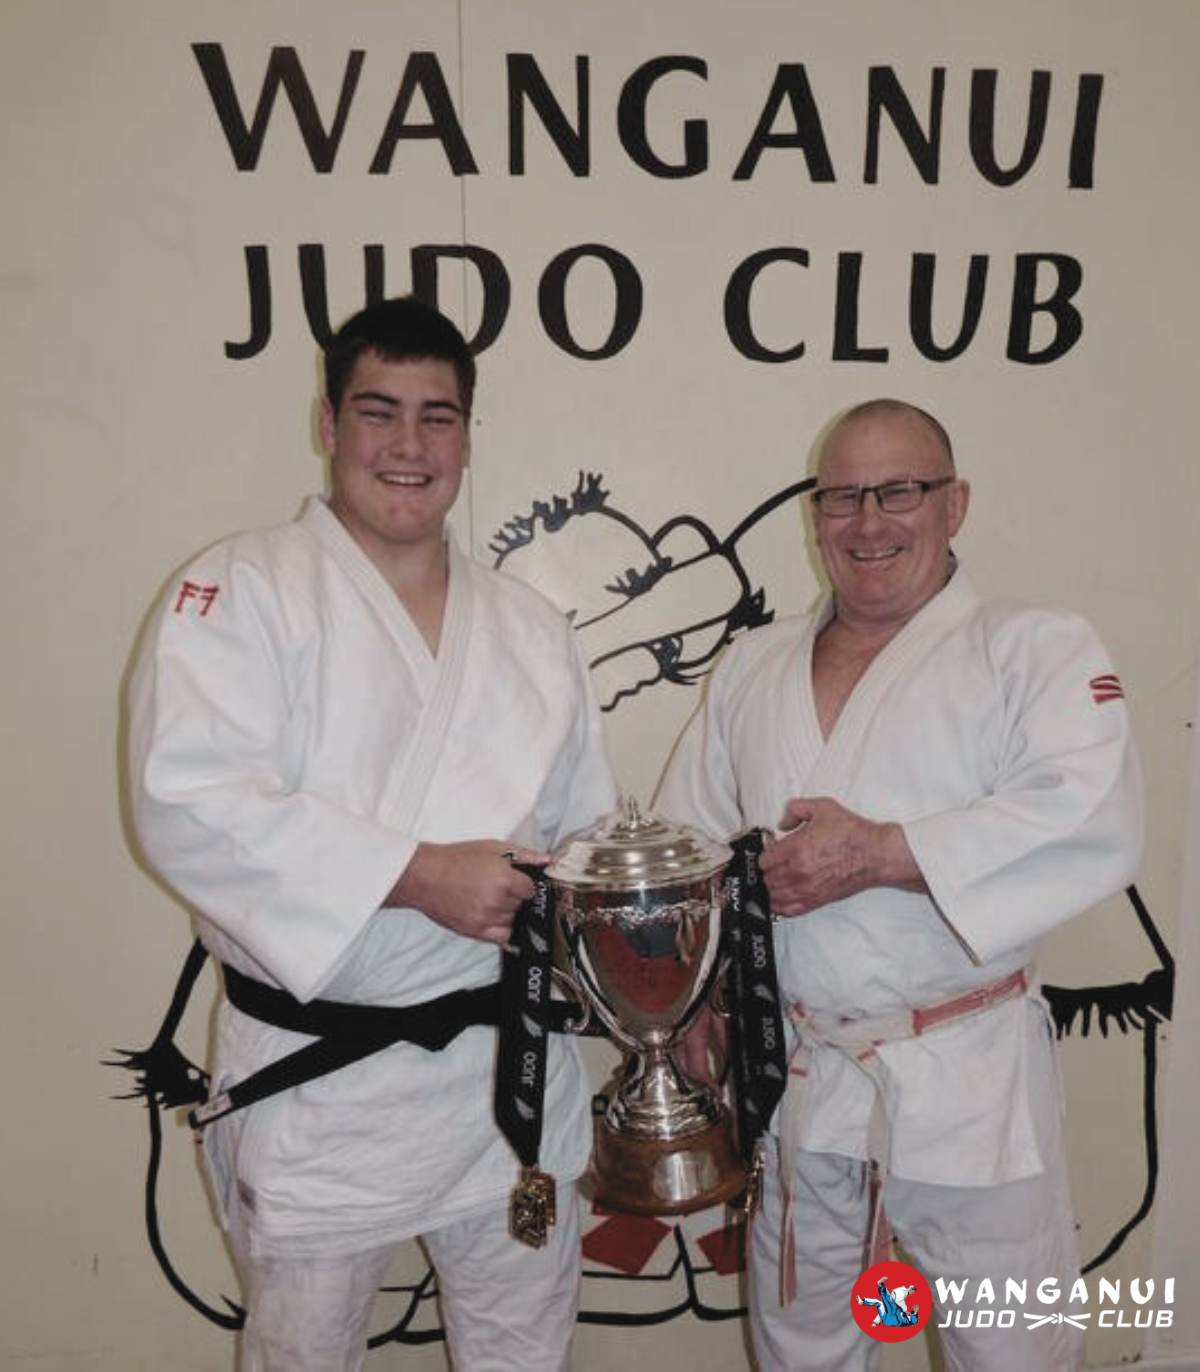 Wanganui Judo Club champions Keightly Watson and Wayne Watson